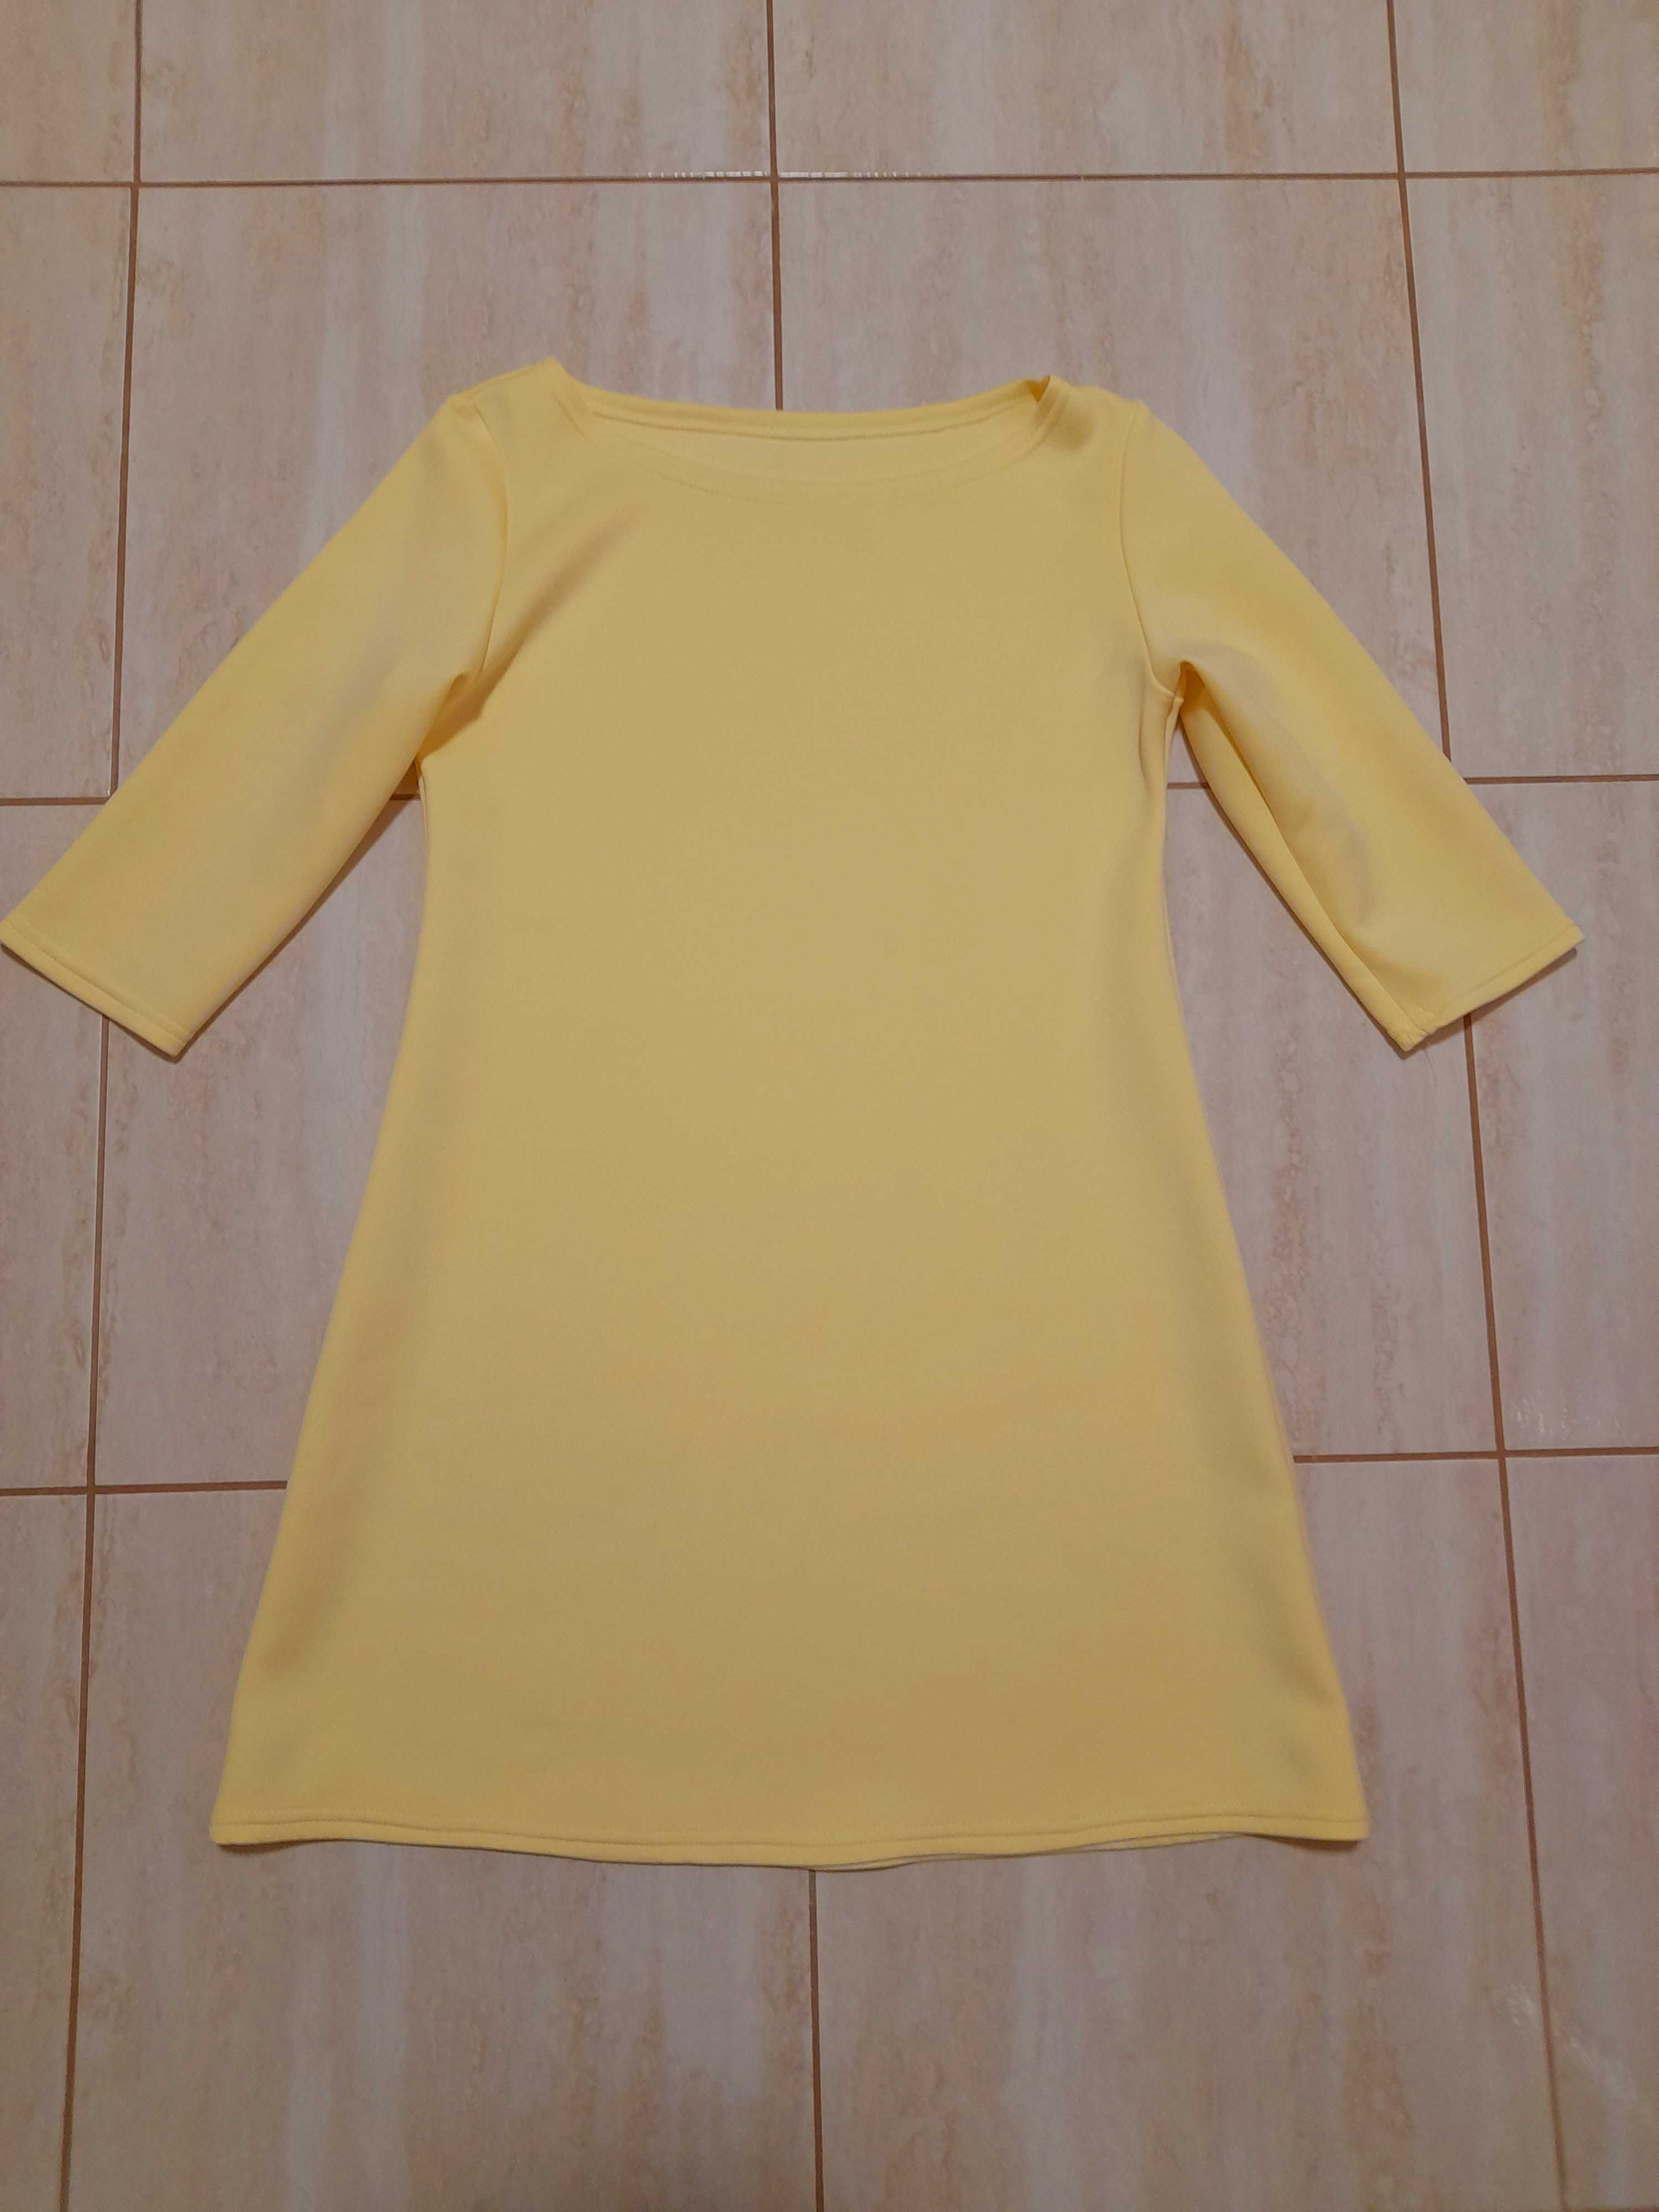 Żółta klasyczna prosta sukienka w literę A, xs, s